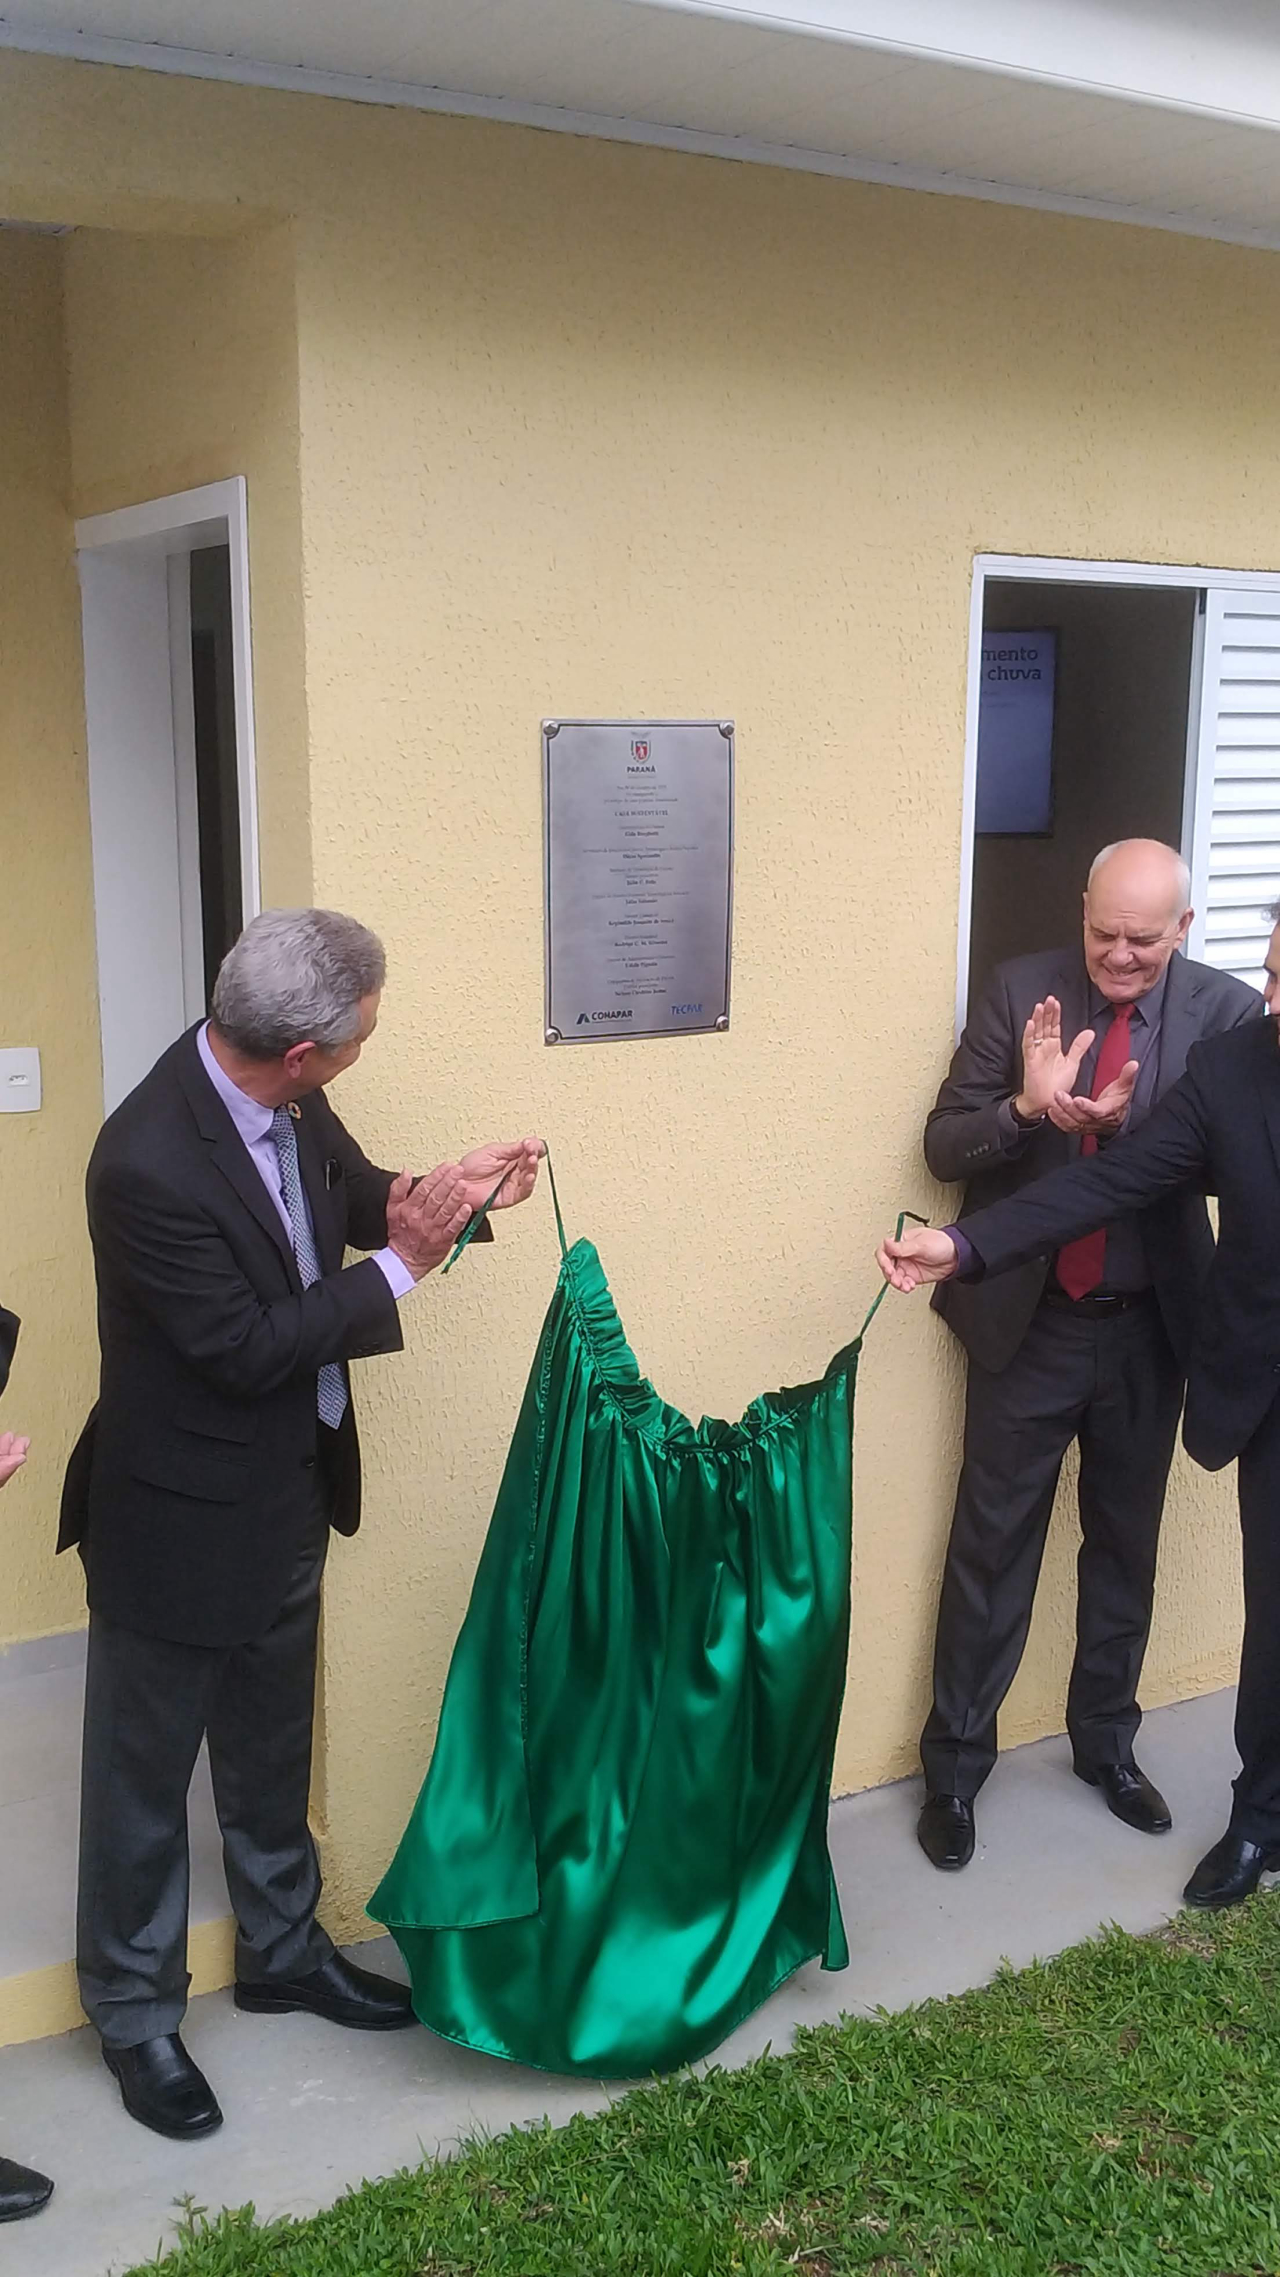 Inauguração do protótipo aconteceu nesta terça (9), no campus da Tecpar em Araucária (PR). Foto: Aléxia Saraiva/Gazeta do Povo